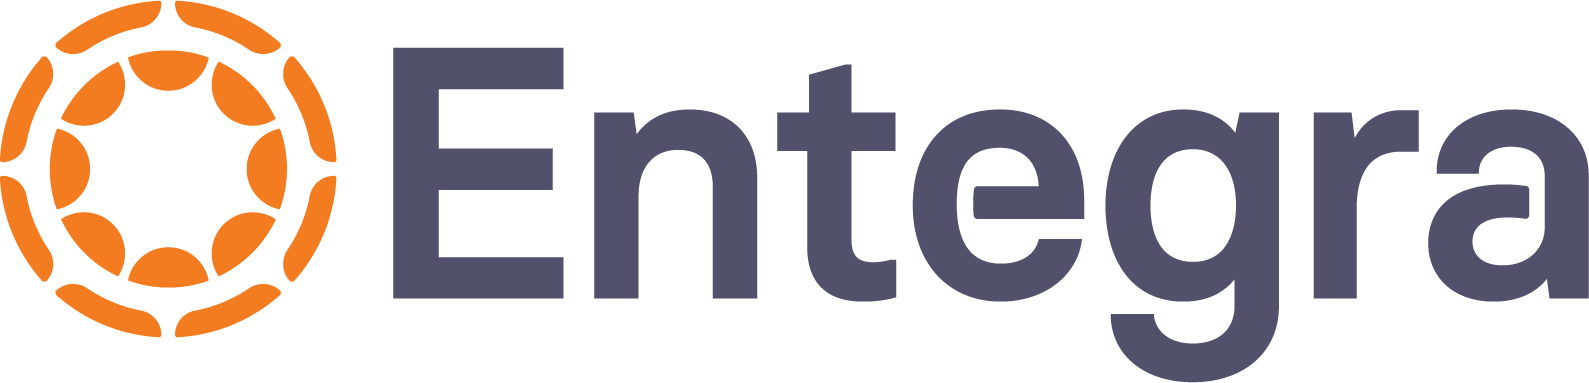 The Entegra logo